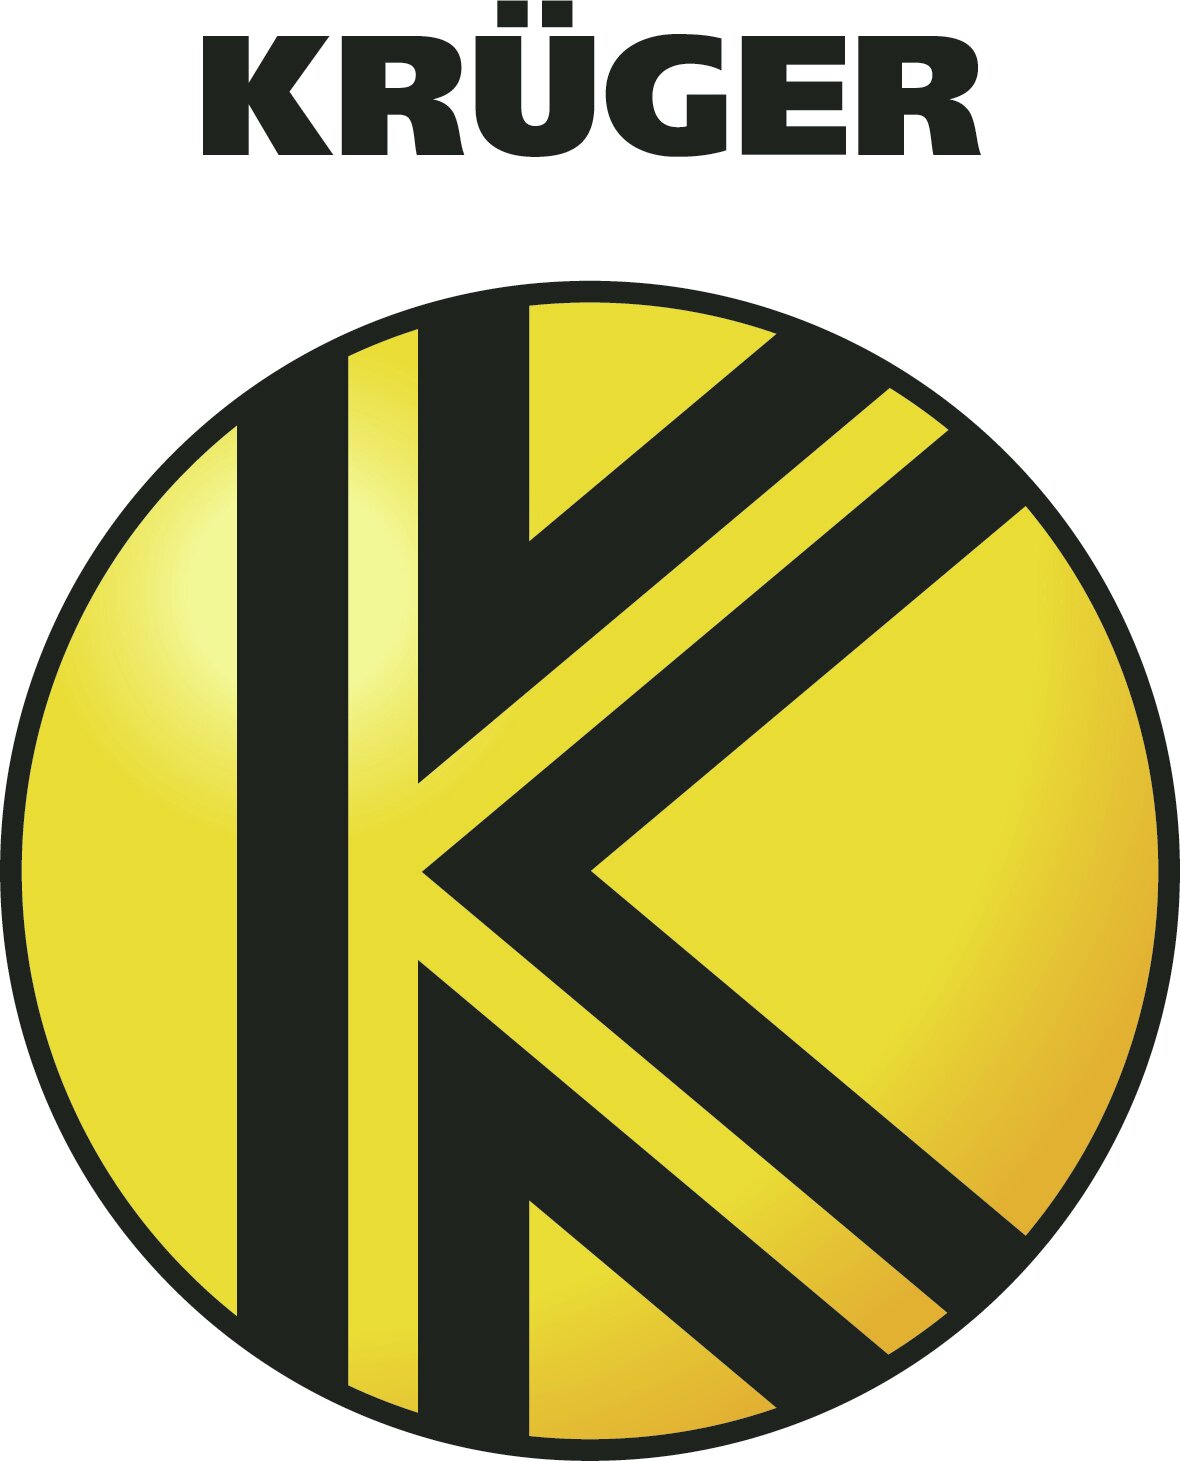 Krüger Karl